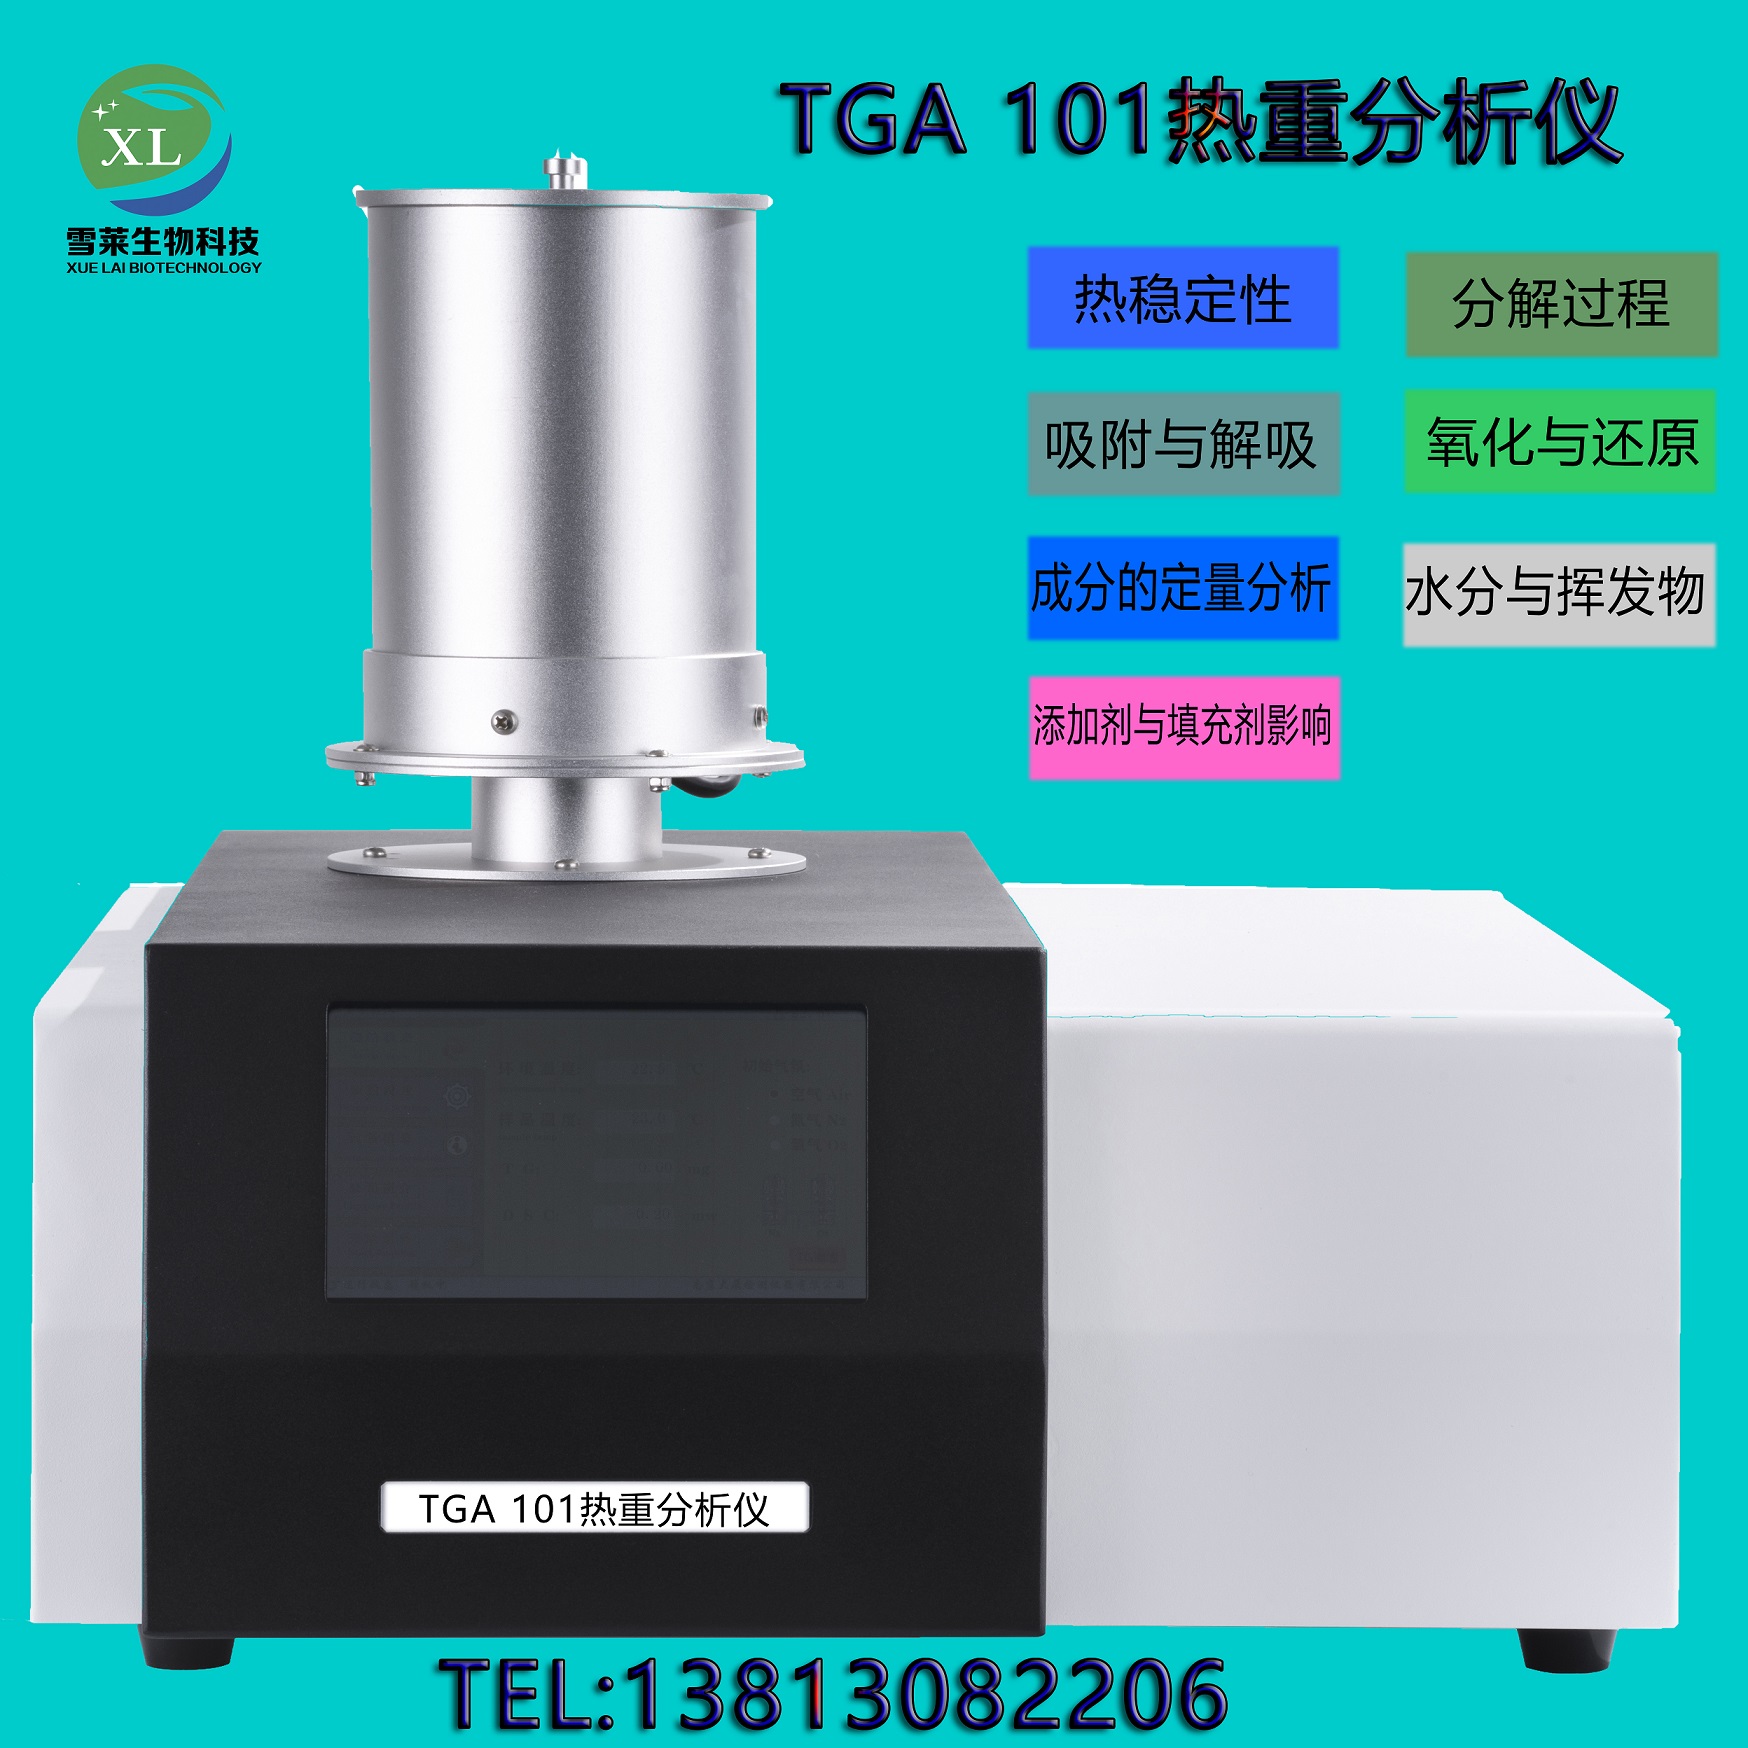 TGA 101 热重分析仪 南京雪莱生物科技有限公司